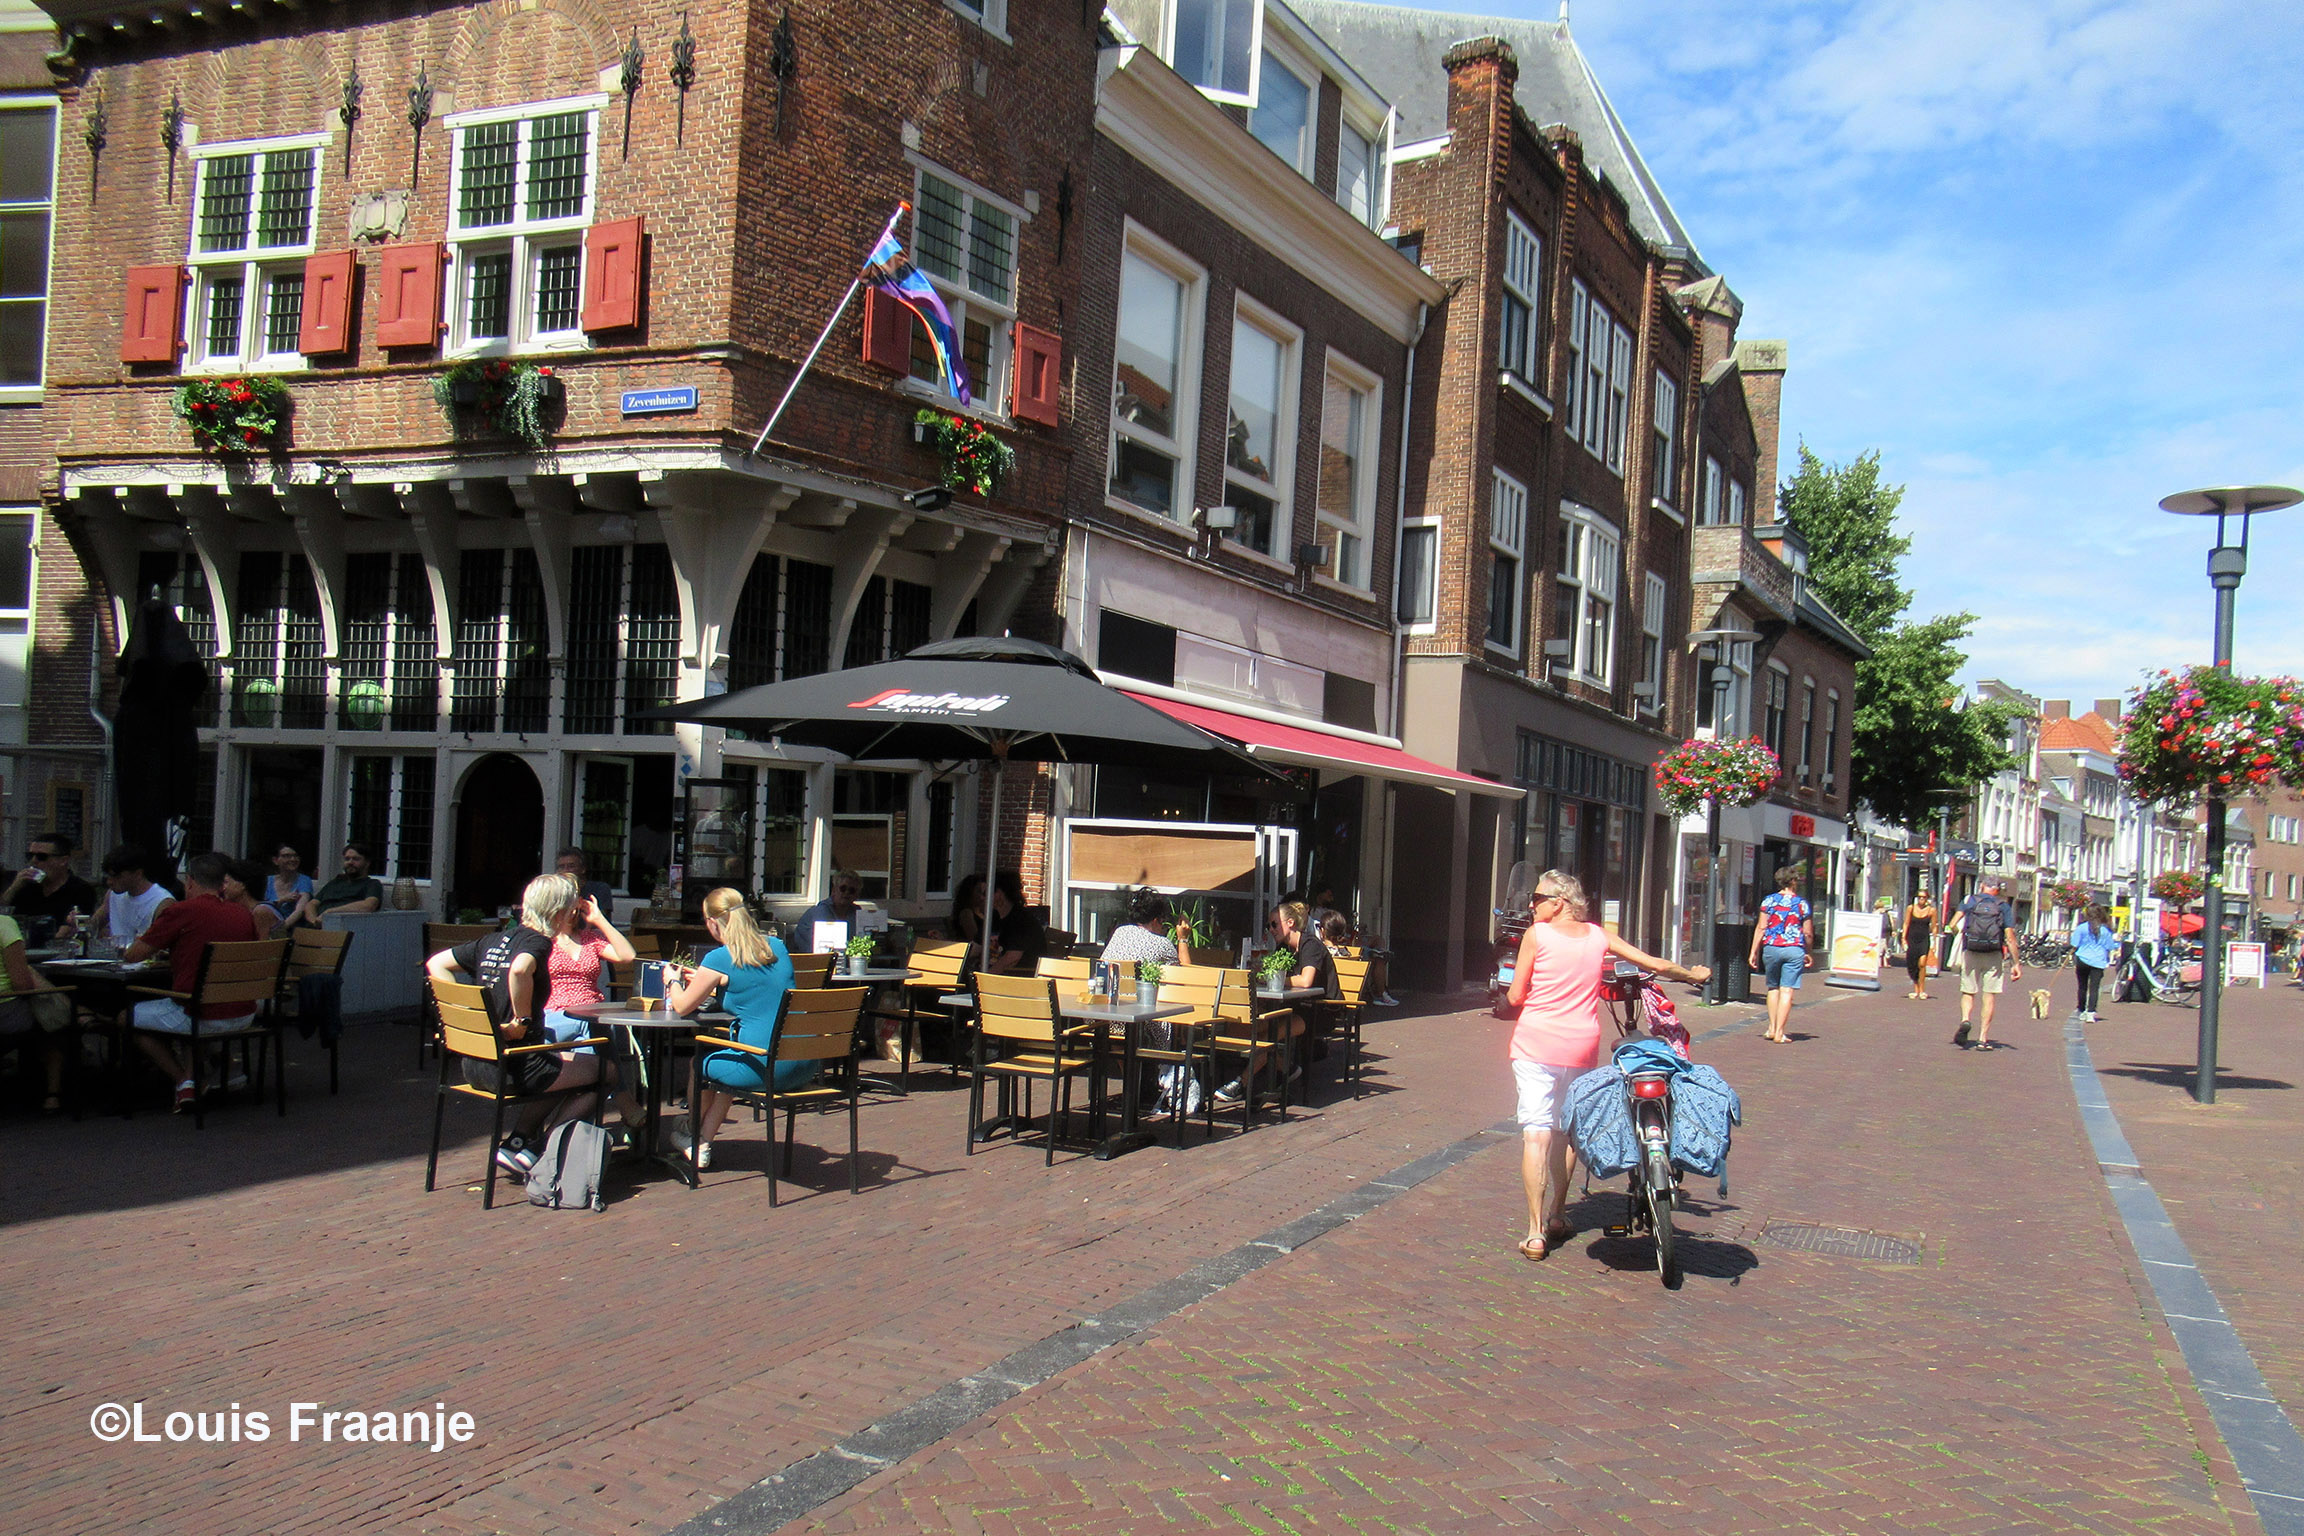 Met de fiets aan de hand door de Langestraat, links het Stadscafé "In den Grooten Slock" - Foto: ©Louis Fraanje